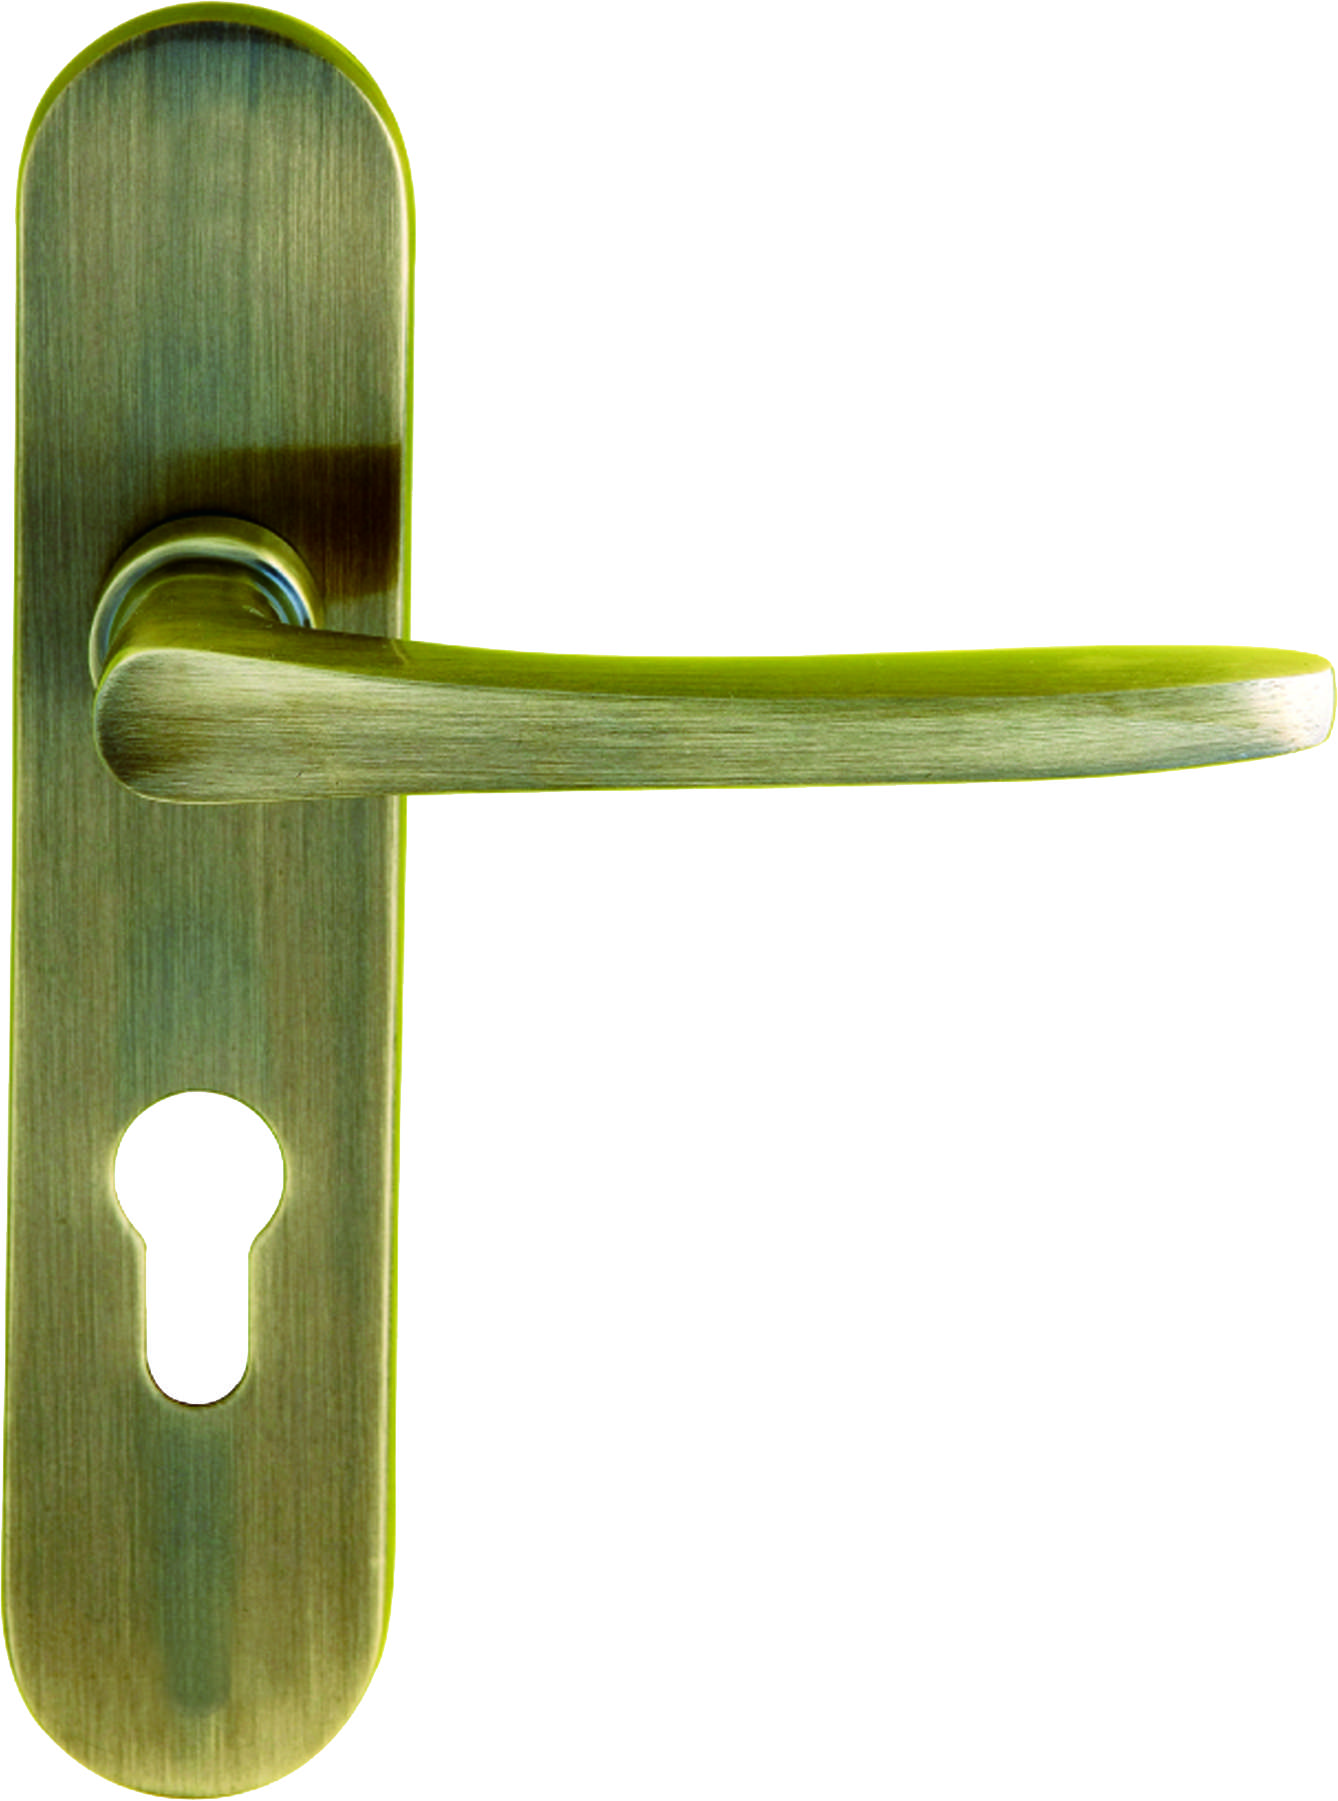 Door Handle Best Quality Brass Door Handle For Wooden Doors